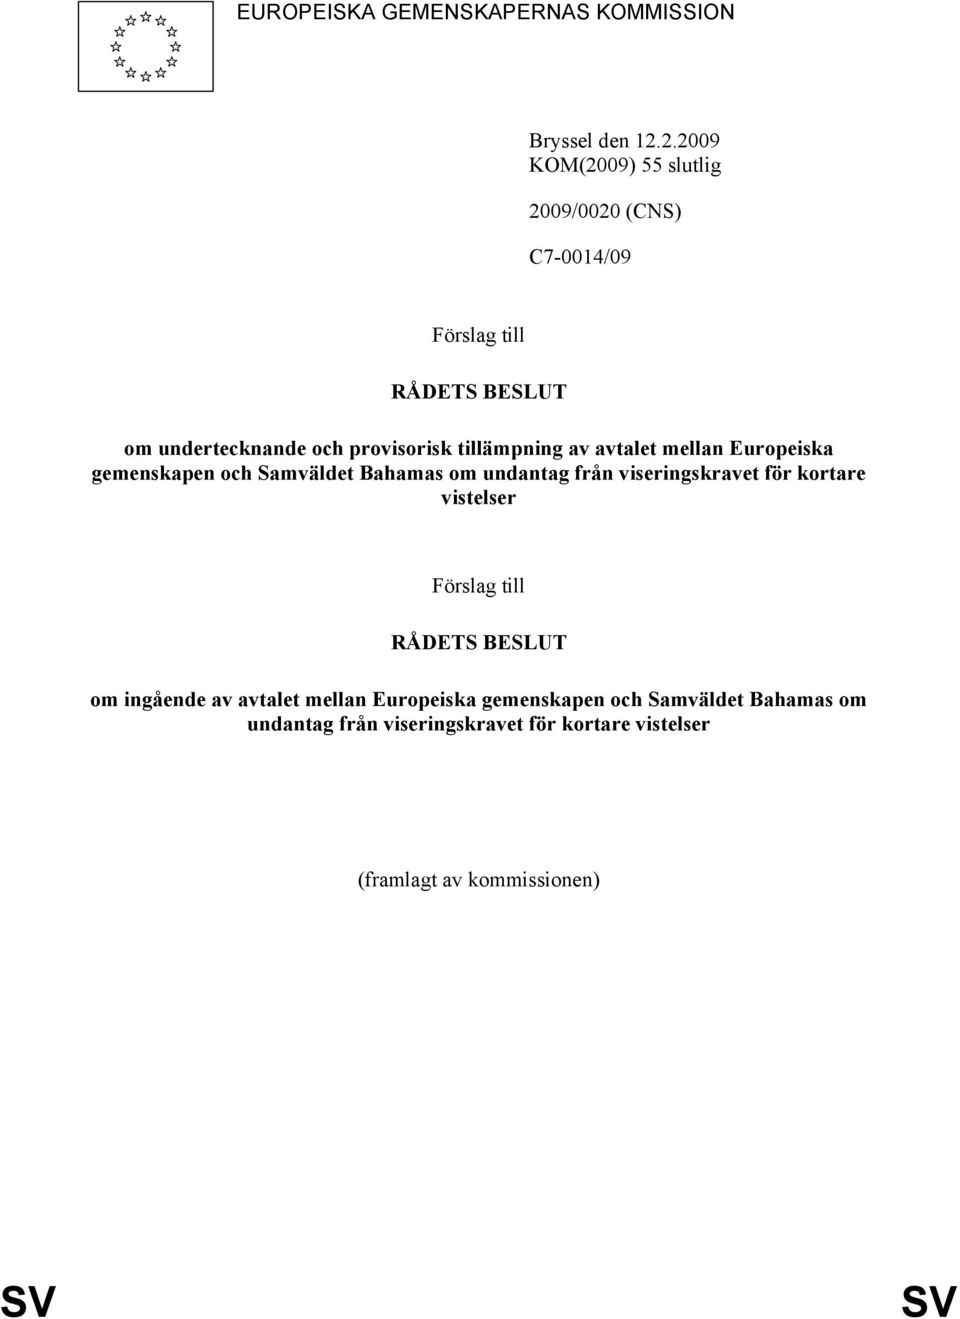 tillämpning av avtalet mellan Europeiska gemenskapen och Samväldet Bahamas om undantag från viseringskravet för kortare